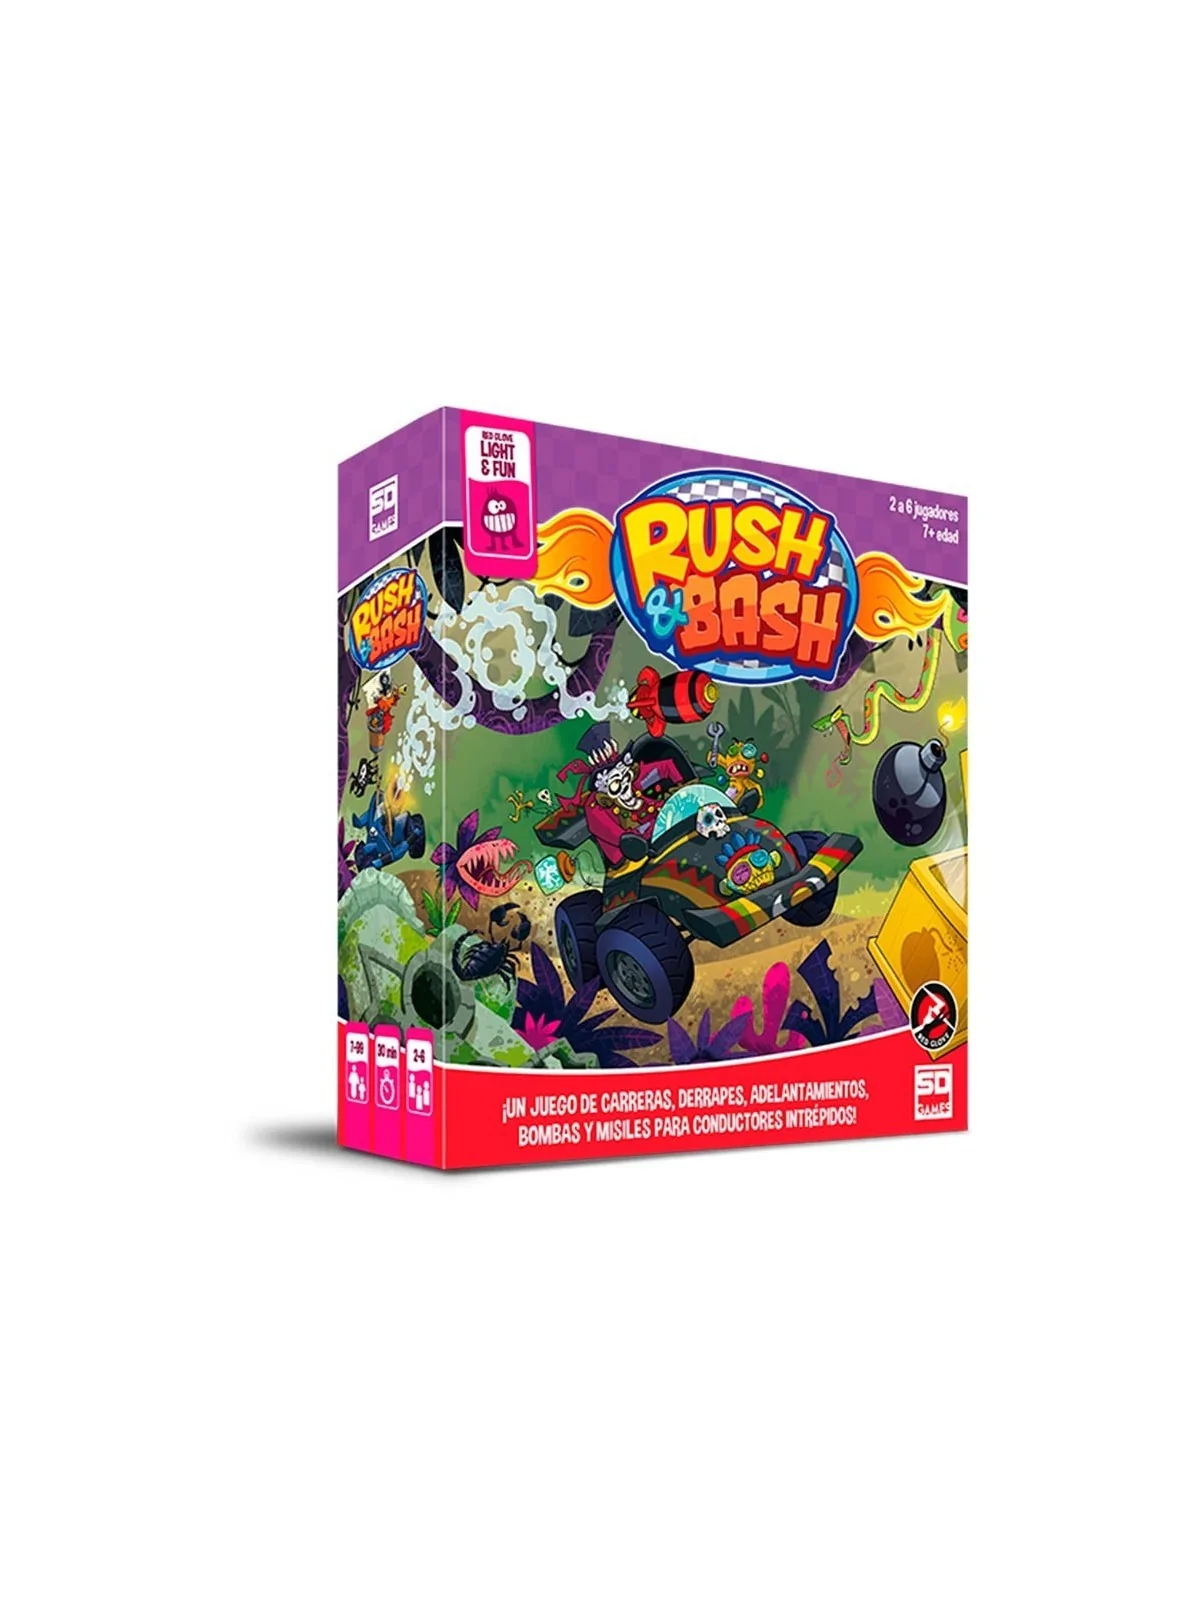 Comprar Rush and Bash barato al mejor precio 26,95 € de SD GAMES